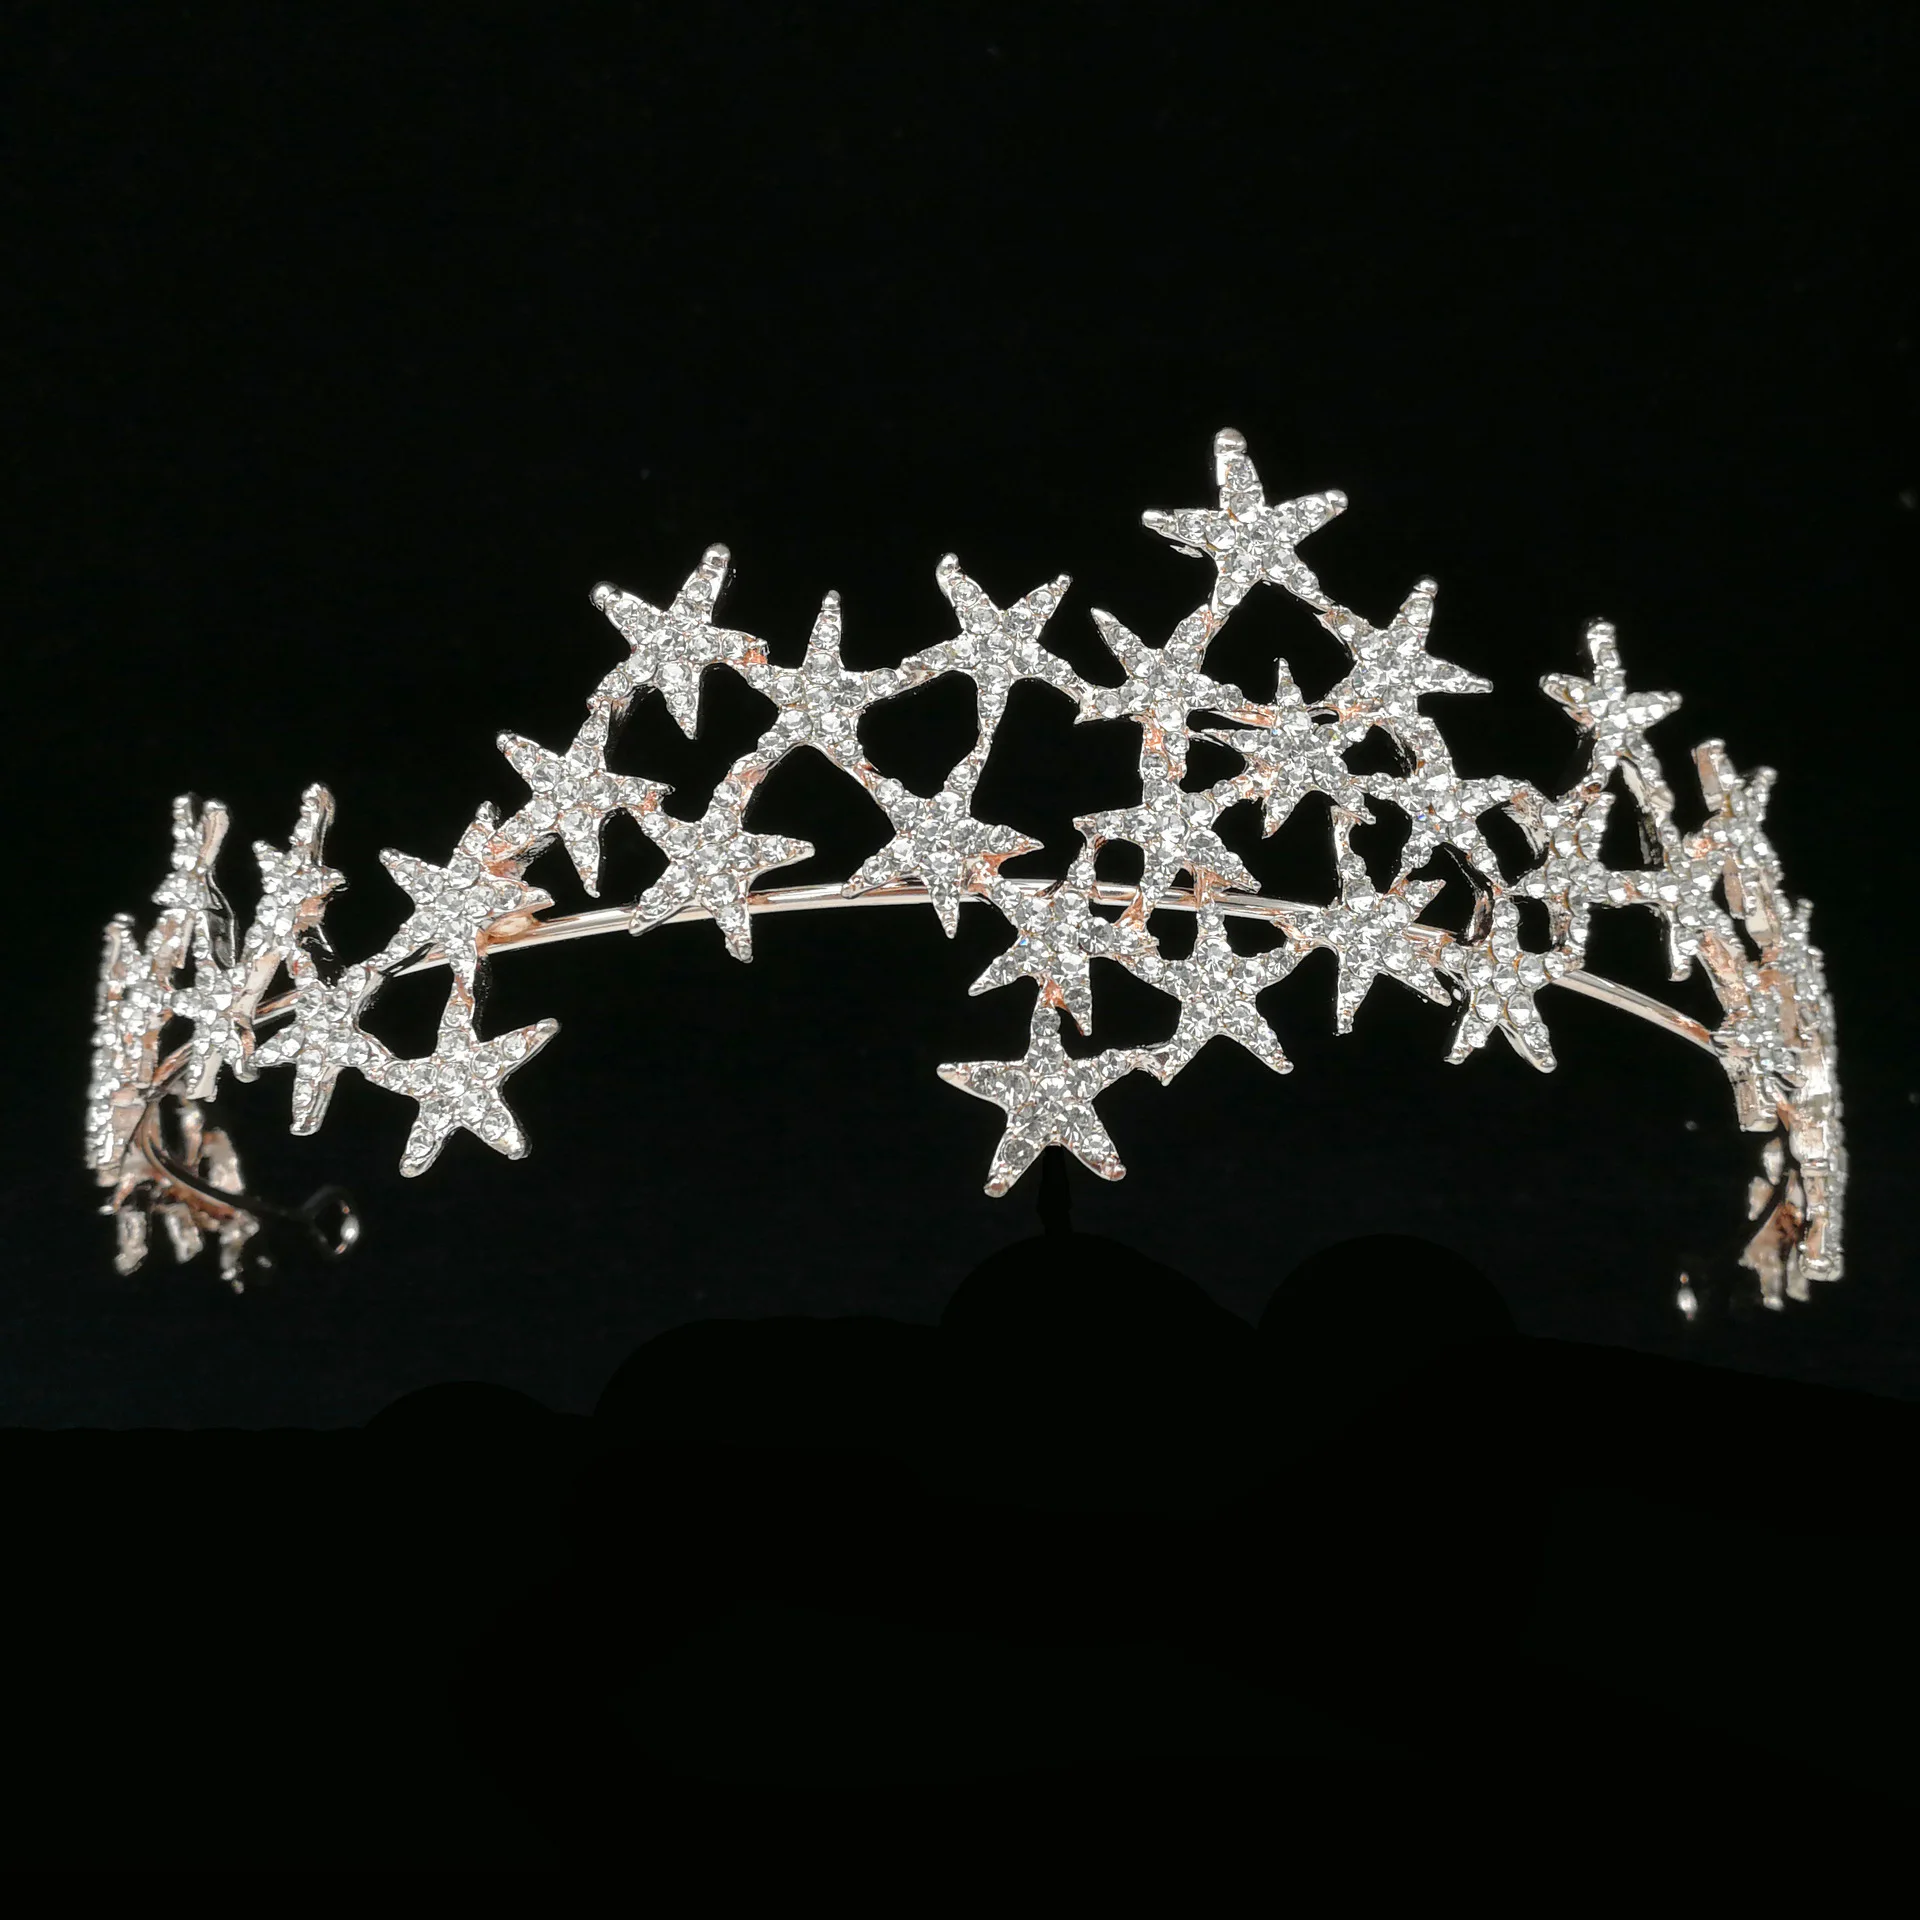 Luxus kézzel készített Crystal Star hajpántok vintage strassz menyasszonyi tiaras korona fejpánt esküvői haj kiegészítők Tiara De Noiva - 5